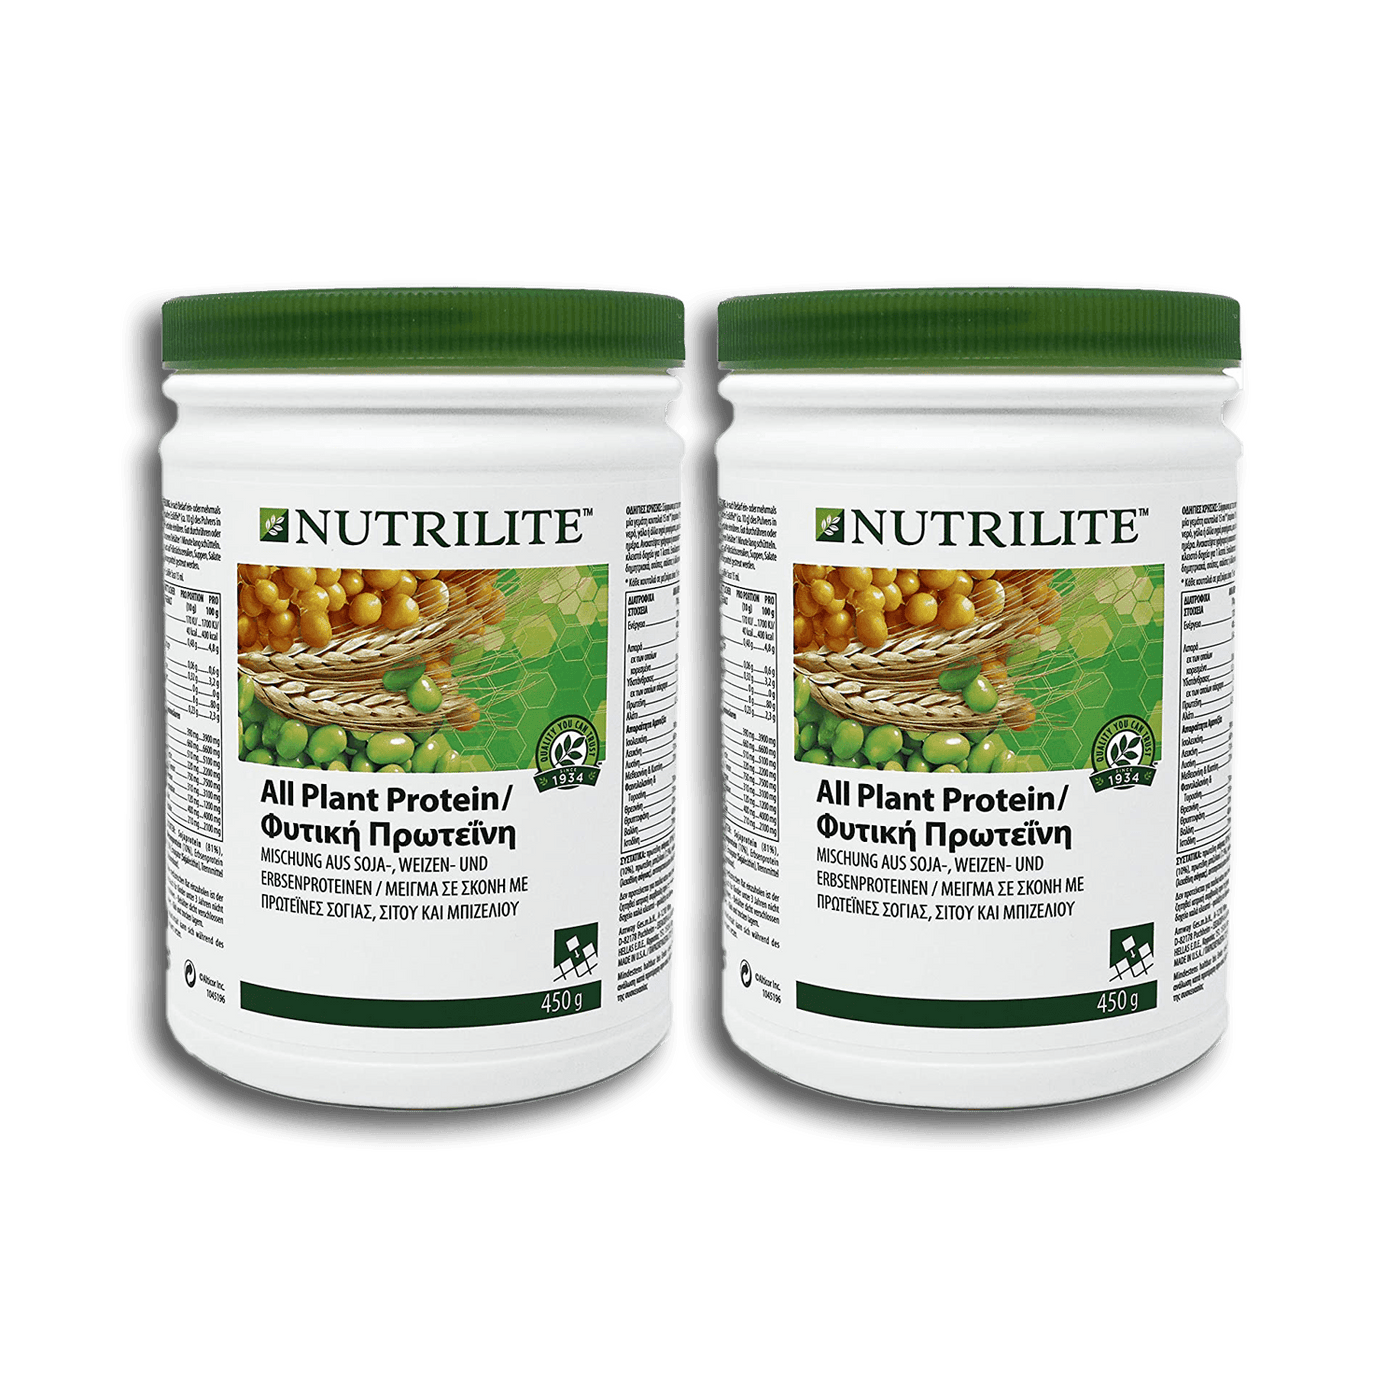 2 x All Plant Protein NUTRILITE™ - pflanzliches Protein aus Soja, Weizen und Erbsen in Pulverform - 2 x 450 g - Amway - (Art.-Nr.: 110415) - Genussleben